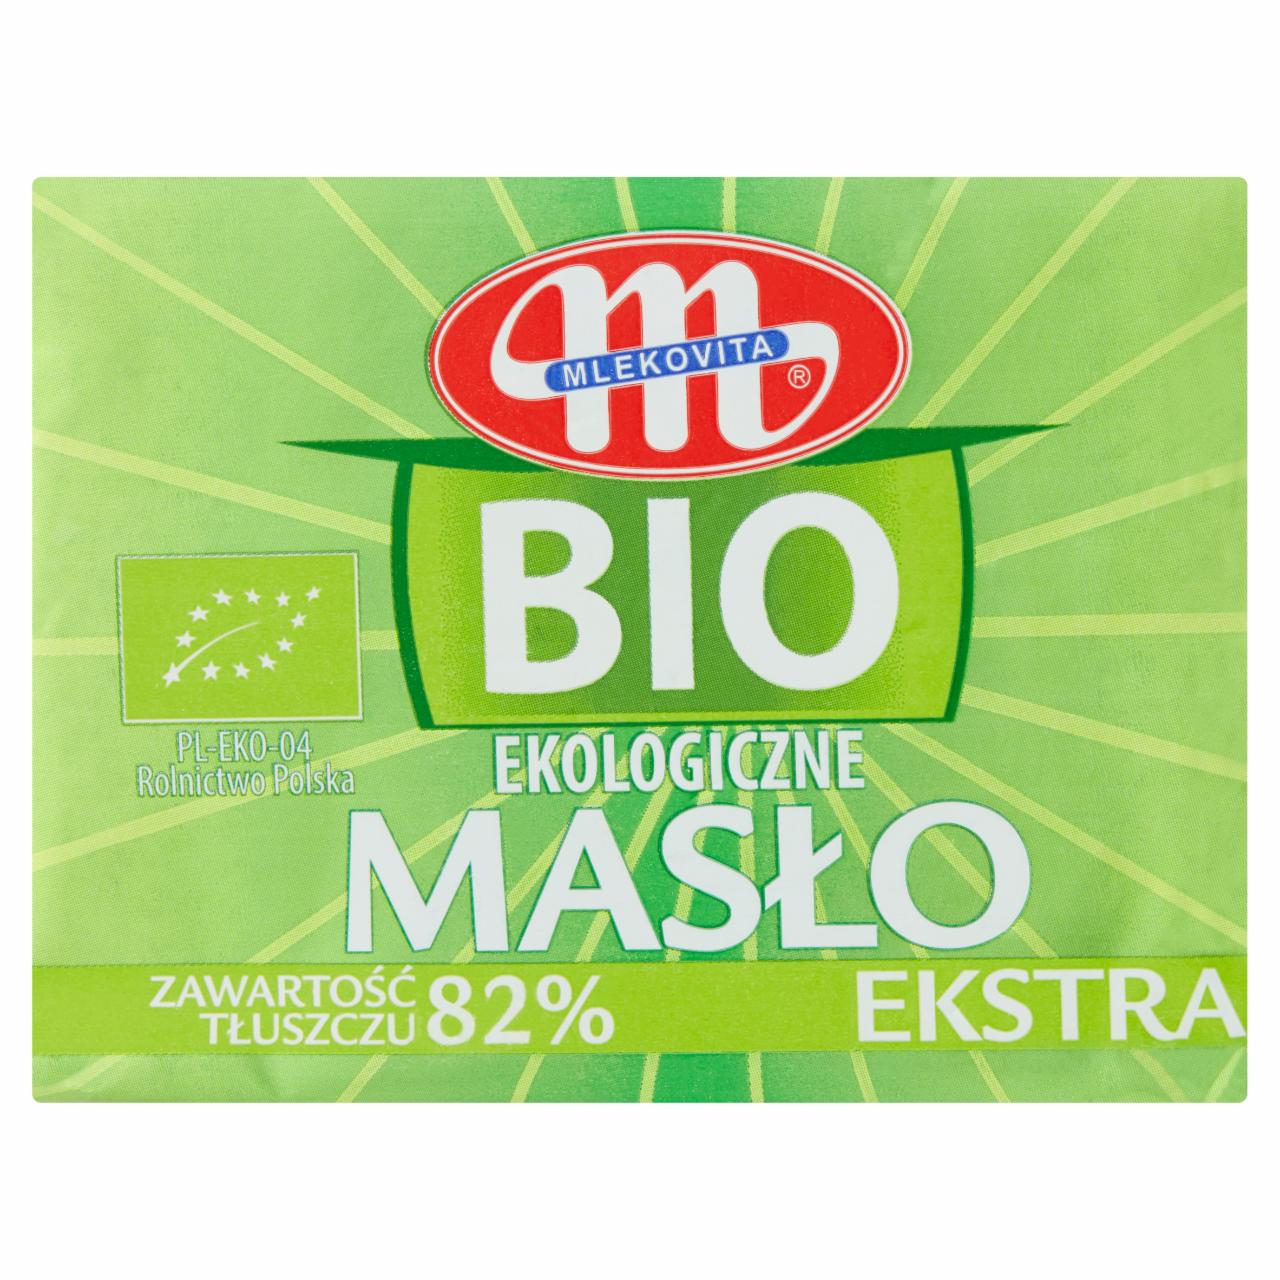 Zdjęcia - Mlekovita BIO Ekologiczne masło ekstra 200 g